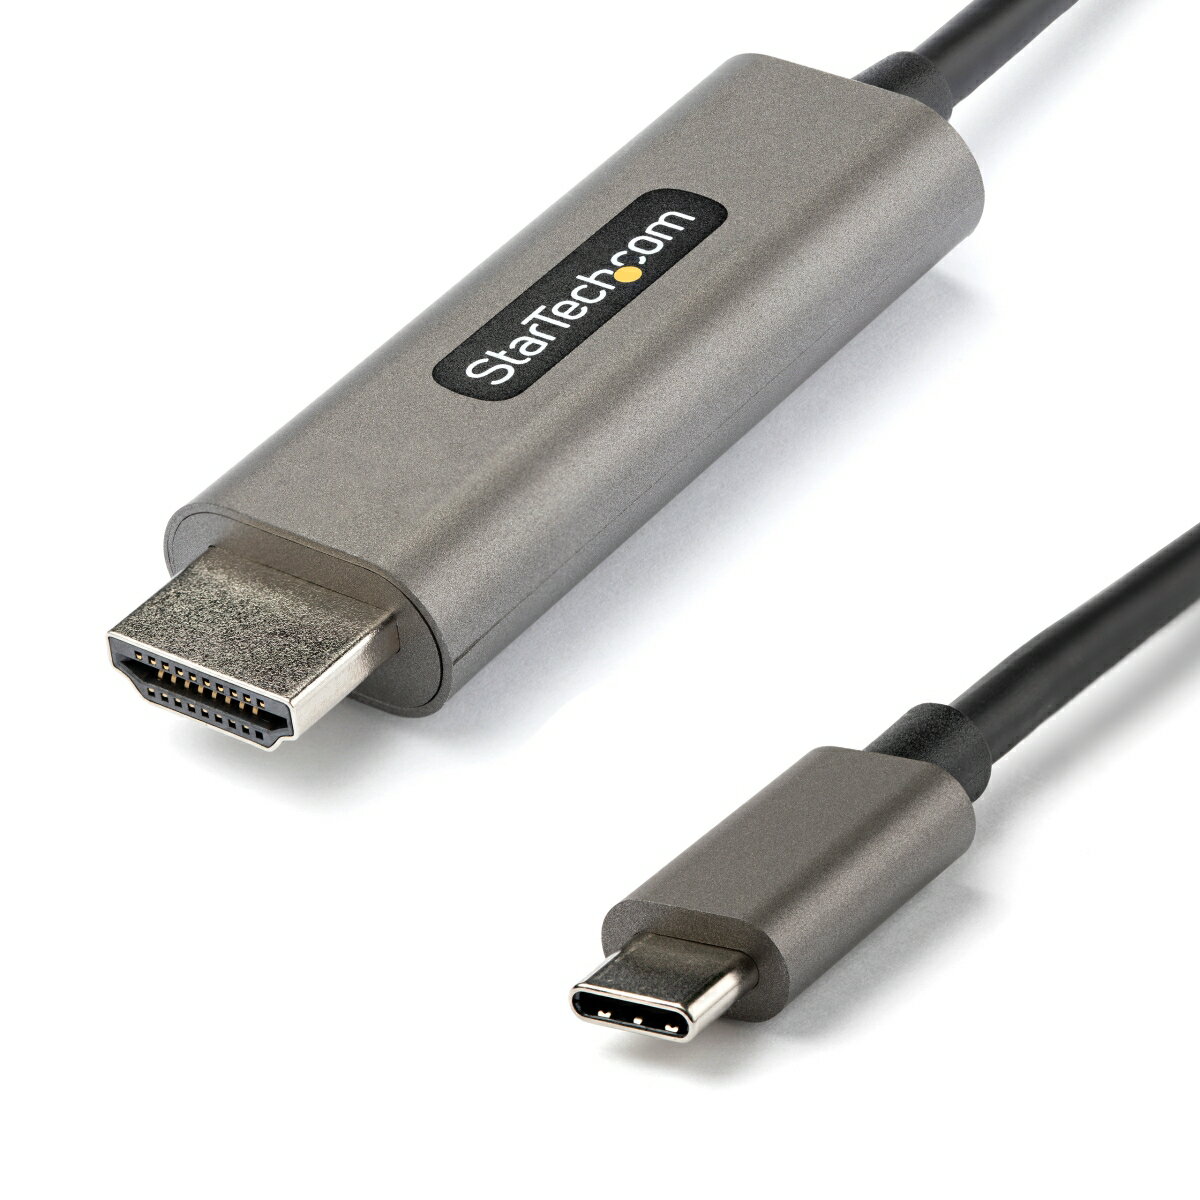 ■コネクタA:USB-C(ビデオ伝送)■コネクタB:HDMI [19ピン]■アクティブ・パッシブアダプタ:アクティブ■AV入力:USB-C■AV出力:HDMI 2.0■対応規格:HDMI 2.0b、DisplayPort 1.4■チップセットID:RTD2172U■動作温度:-20°C 〜 60°C (-4F° 〜 140F°)■保存温度:-20°C 〜 80°C■湿度:0% - 85 % RH(結露しないこと)■オーディオ仕様:HDMI(7.1chオーディオ)■ビデオのバージョン:HDMI 2.0b■対応解像度:HDMI: 3840x2160 (4K) / 60Hz。これよりも低い解像度やリフレッシュレートにも対応しています。■ワイドスクリーンサポート:あり■帯域幅:HBR3■色:スペースグレー■製品幅:22mm 製品長さ:1m■製品高さ:12mm■製品重量:41g■工場出荷時(パッケージ)重量:50.2g■注意:本アダプタを使用するには、USB-CポートがDisplayPort(DPオルタネートモード)に対応している必要があります。 本製品の最大性能を得るには、接続先デバイスと接続元デバイスの両方で該当仕様に対応している必要があります。